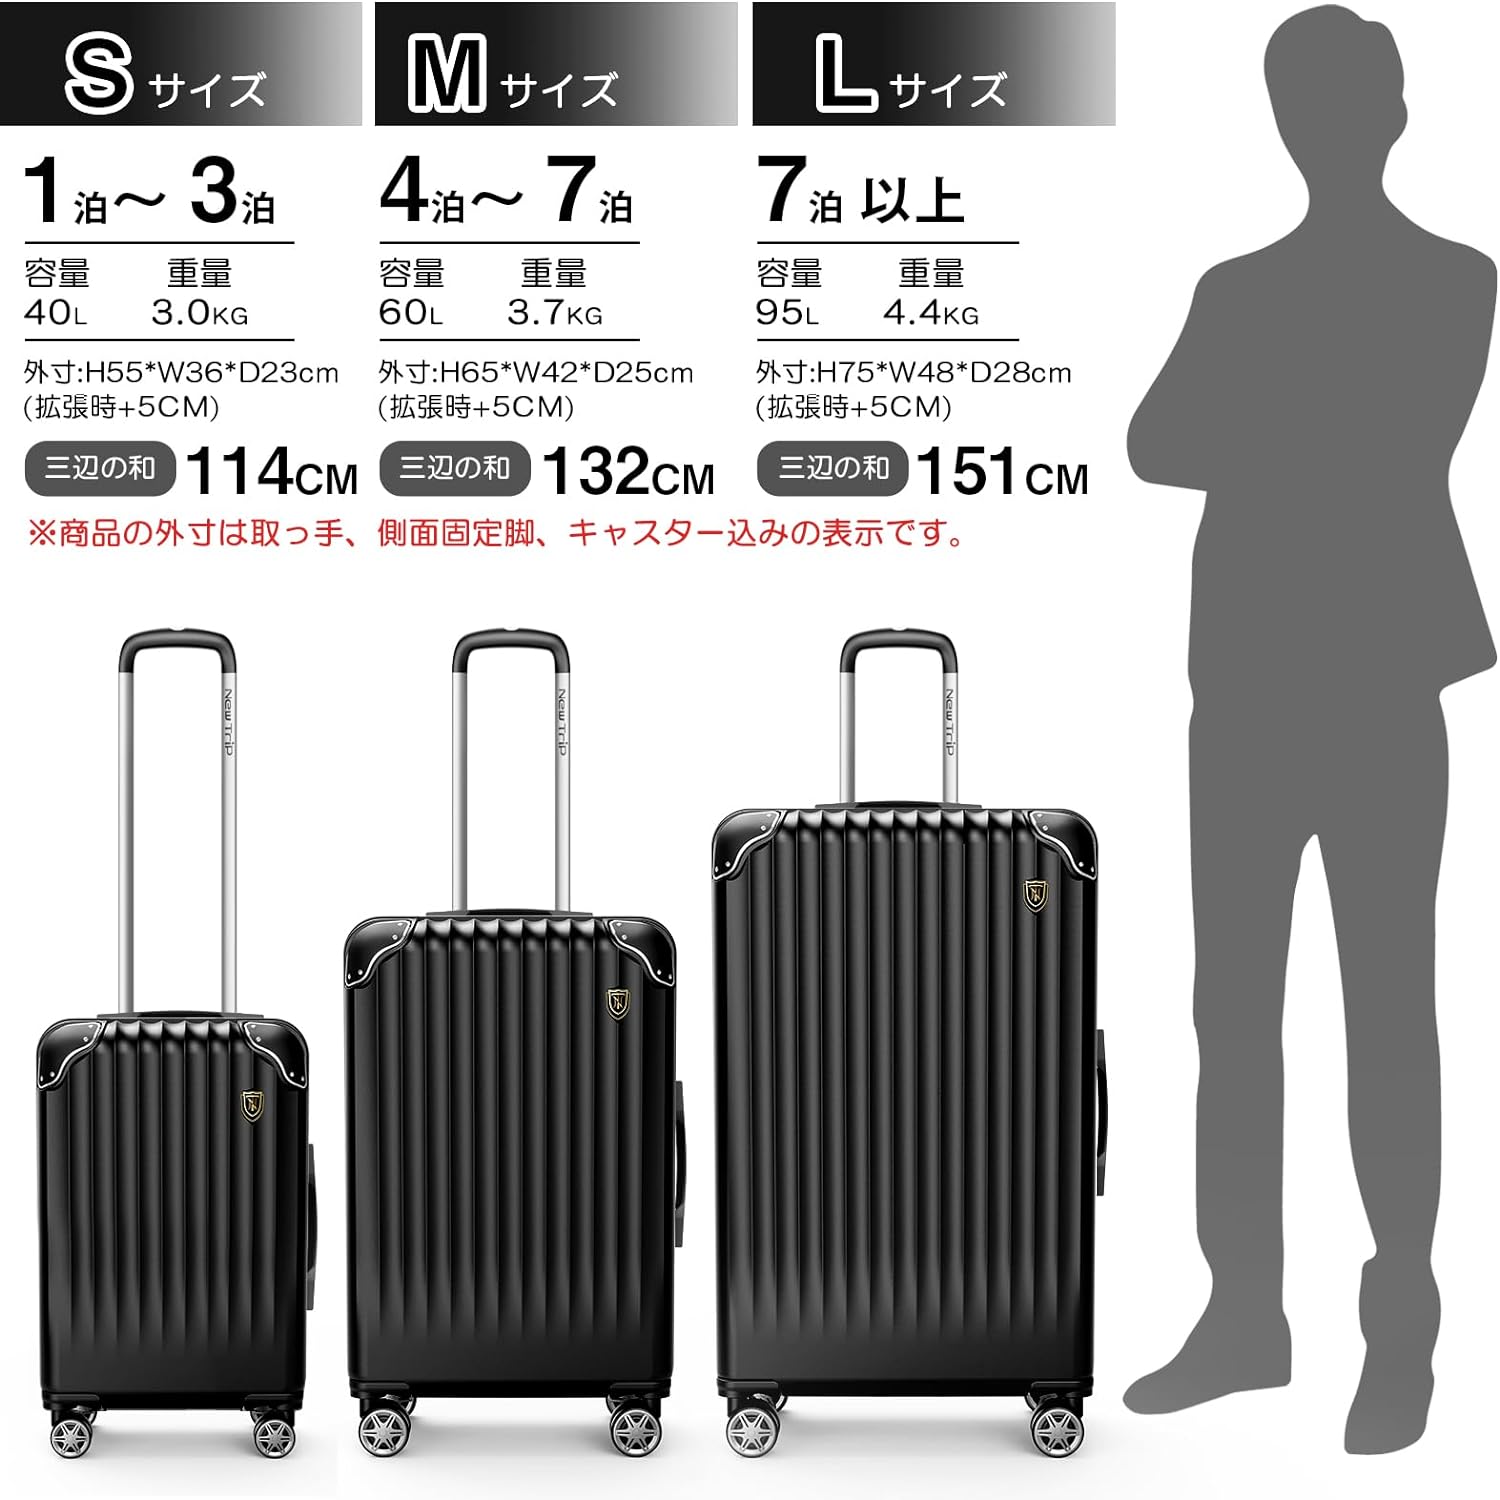 New Trip] スーツケース 拡張機能付き S-L ブラック 40L-95L